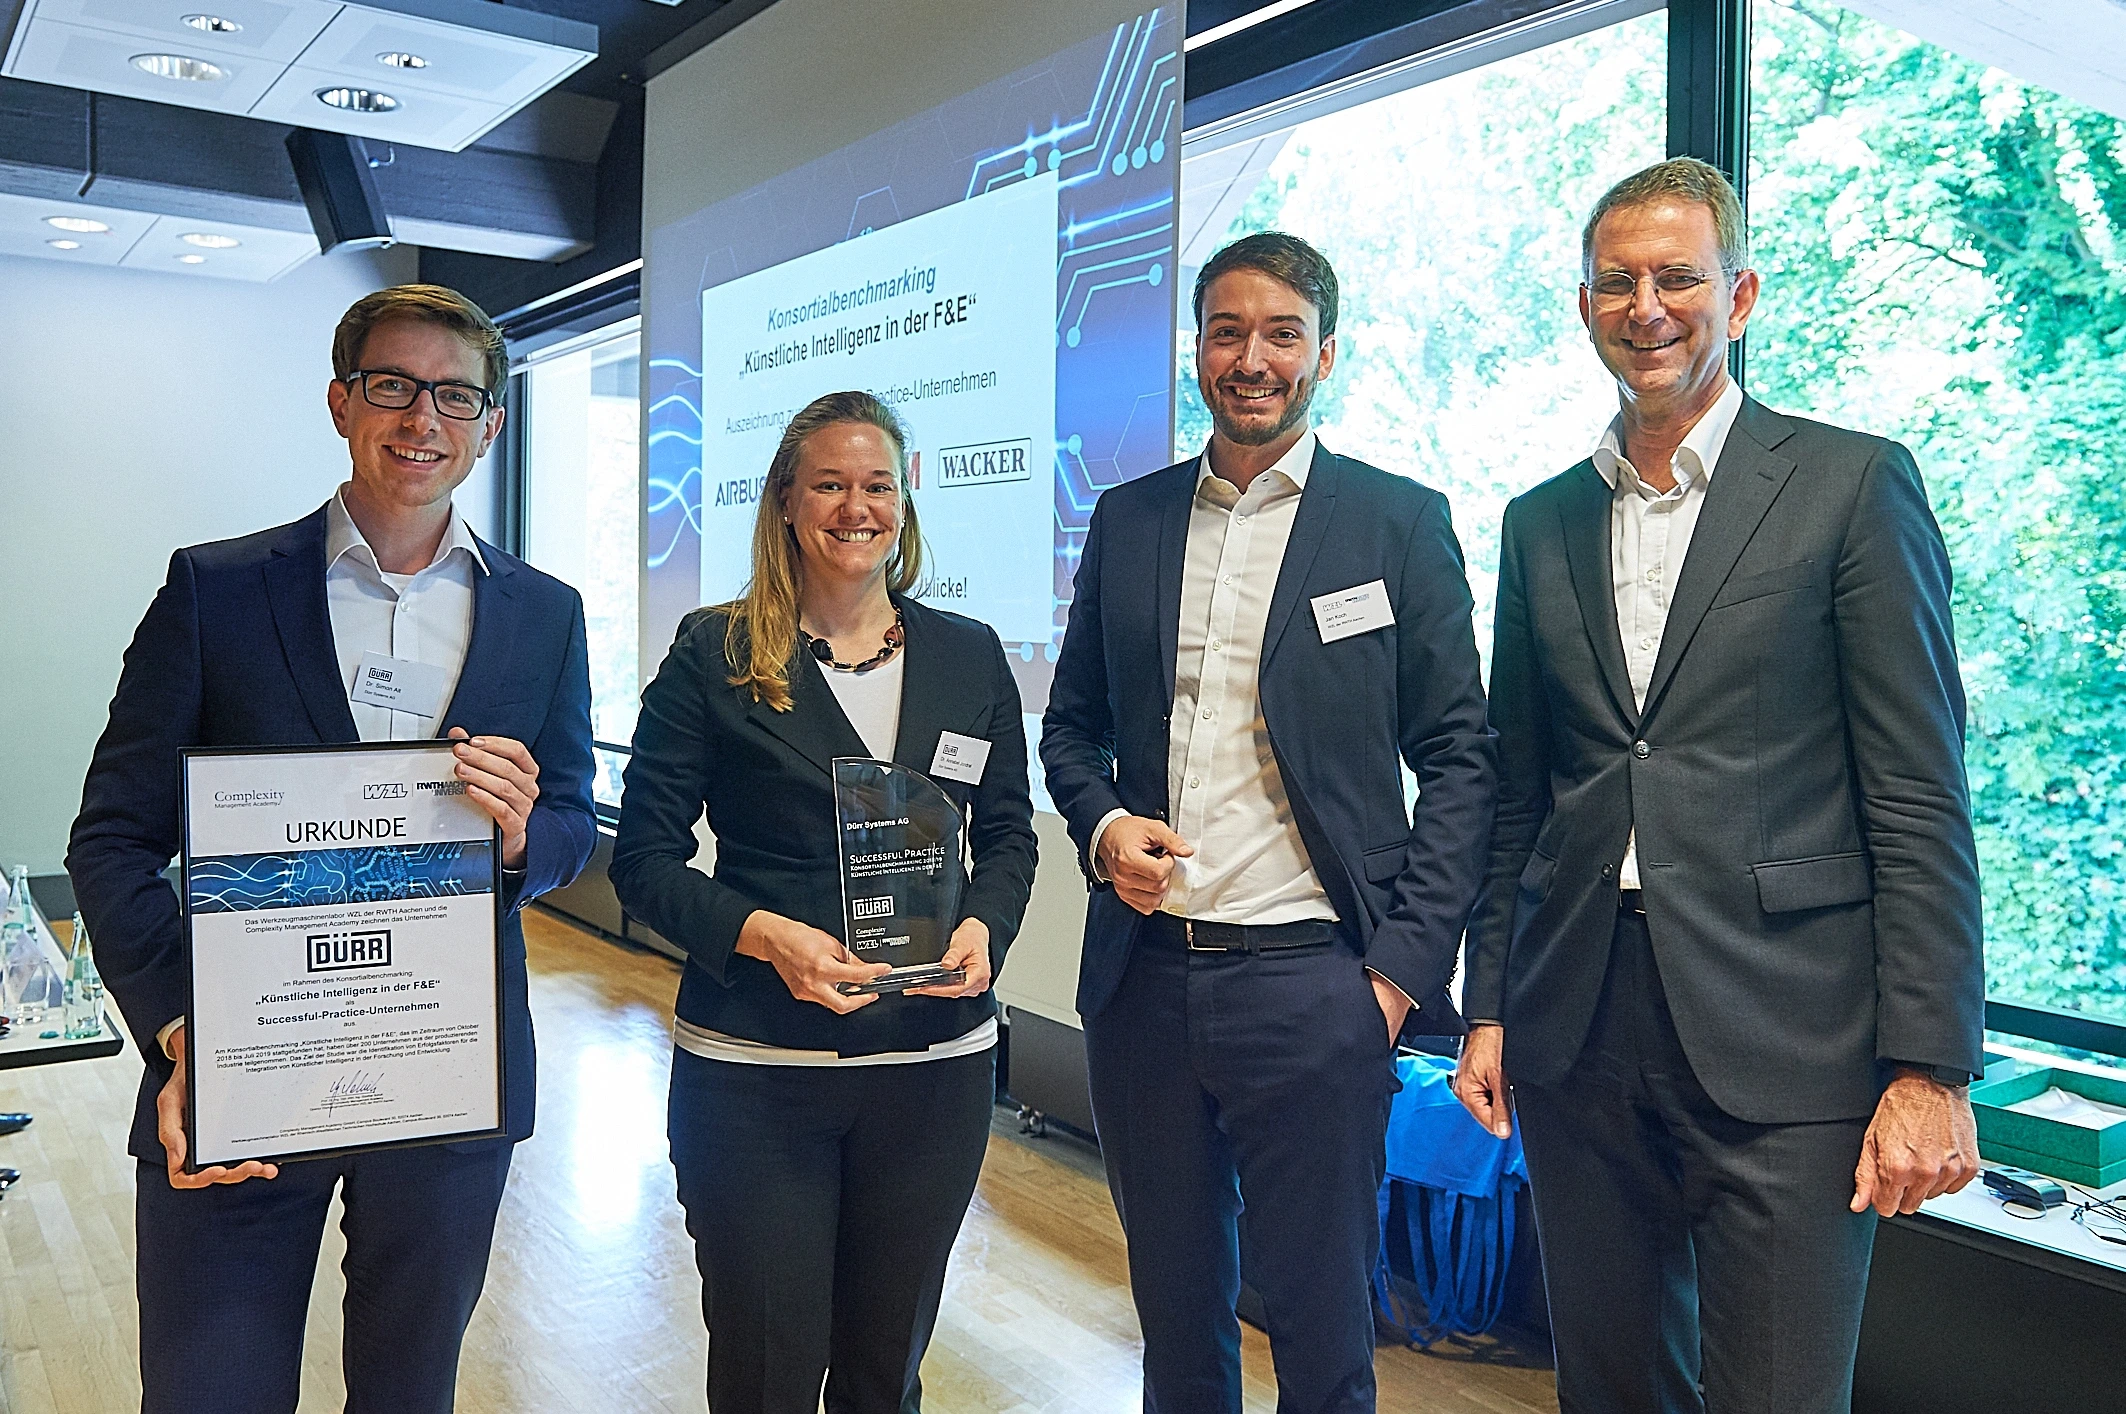 Dürr receiving the Successful Practice Company Award